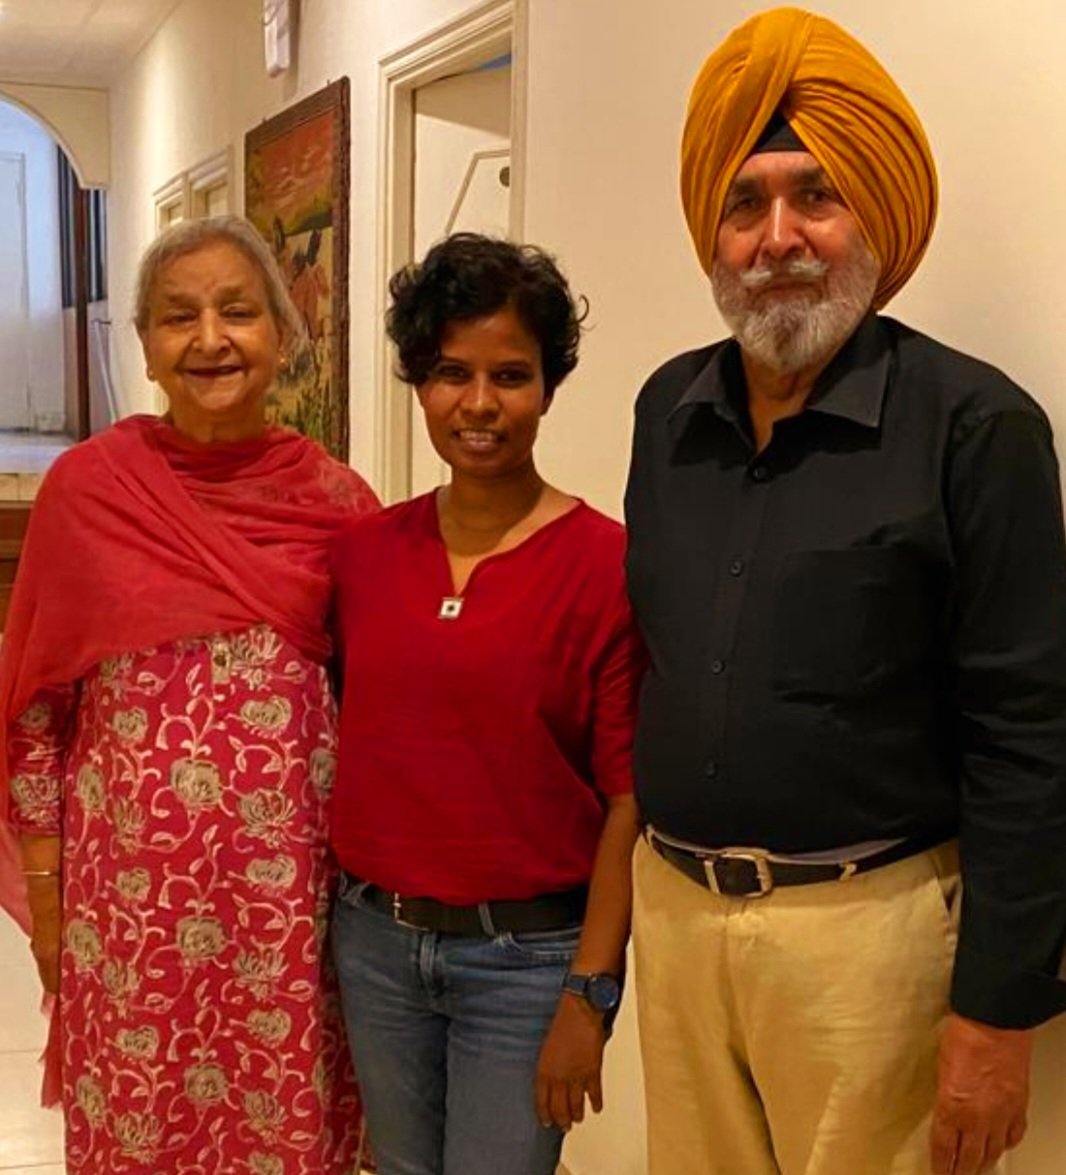 पिछले दिनों एक सुंदर परिवार मिले. पंजाब के चर्चित लेखक जसबीर सिंह भुल्लर और उनकी पत्नी अमर इंदर जी. कहा ' पंजाब में हमारा घर तुम्हारा घर है. देश में नॉर्थ ईस्ट को लेकर, आदिवासियों को लेकर एक धारणा बनी रहती है. बात होने पर वह टूटती है. लोगों को महसूस कर पाने से देश महसूस होता है.'